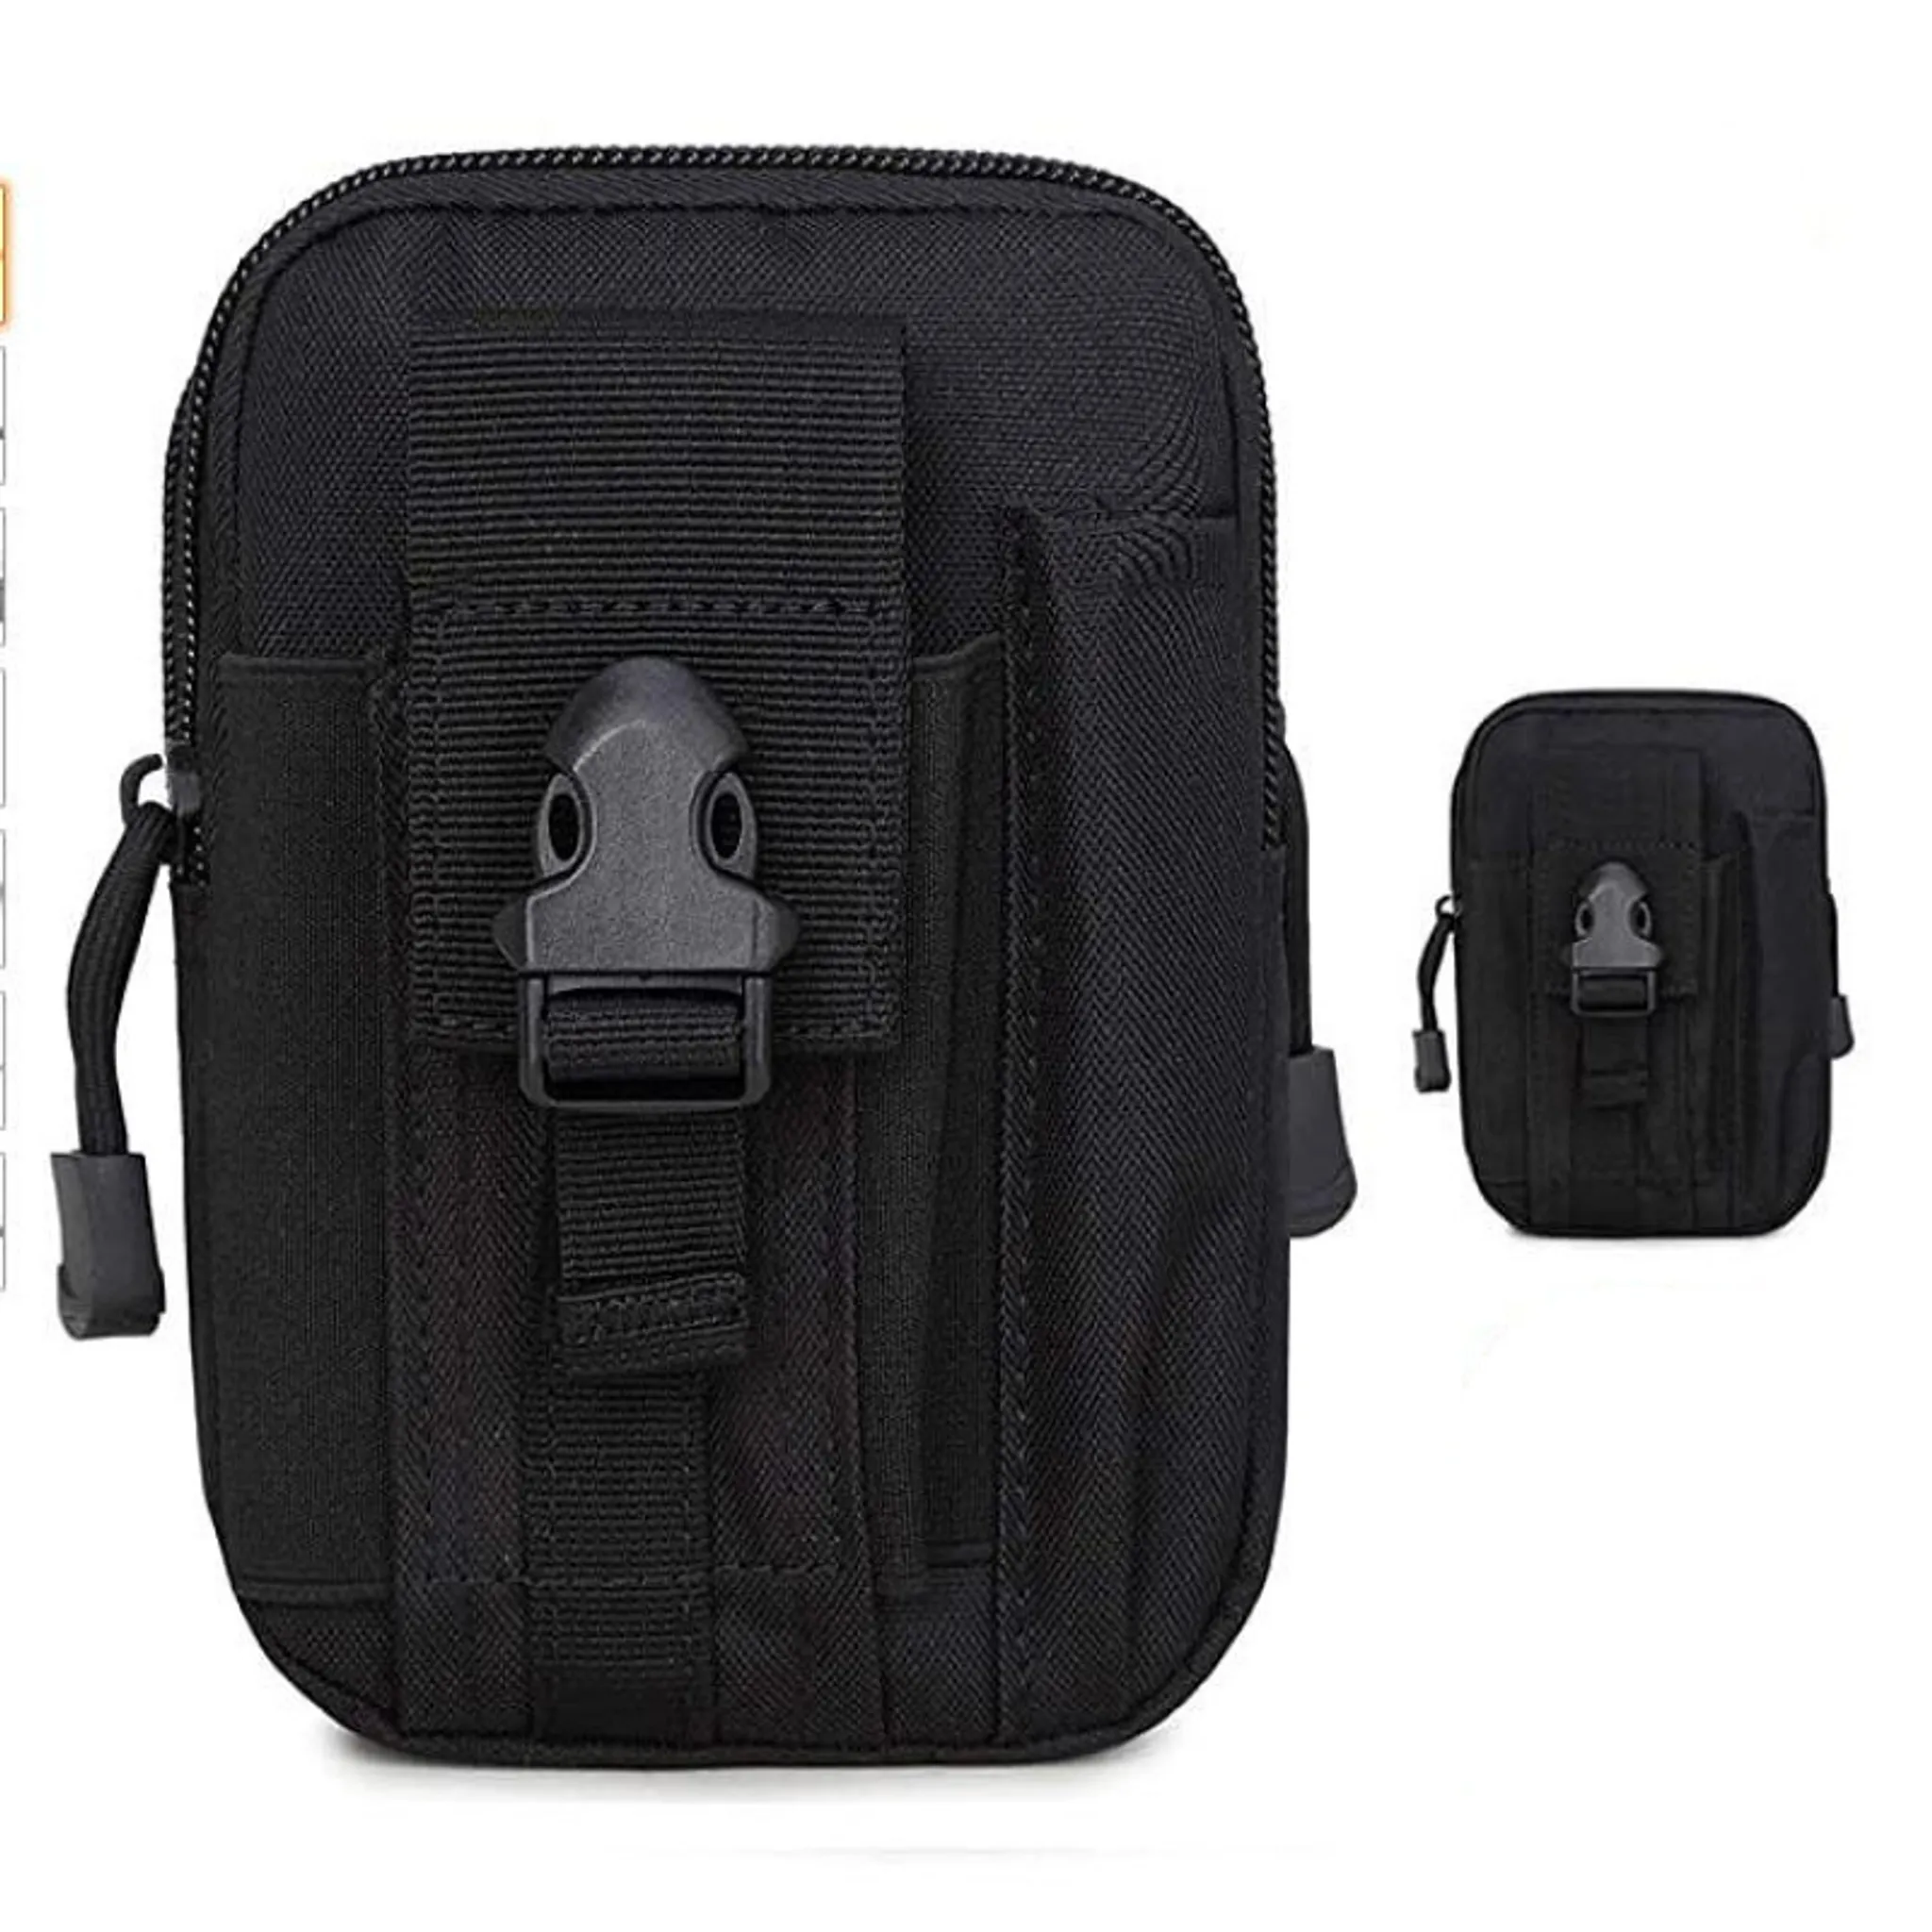 2 Pack Molle Tasche Taktische Hüfttaschen, Multifunktional Utility